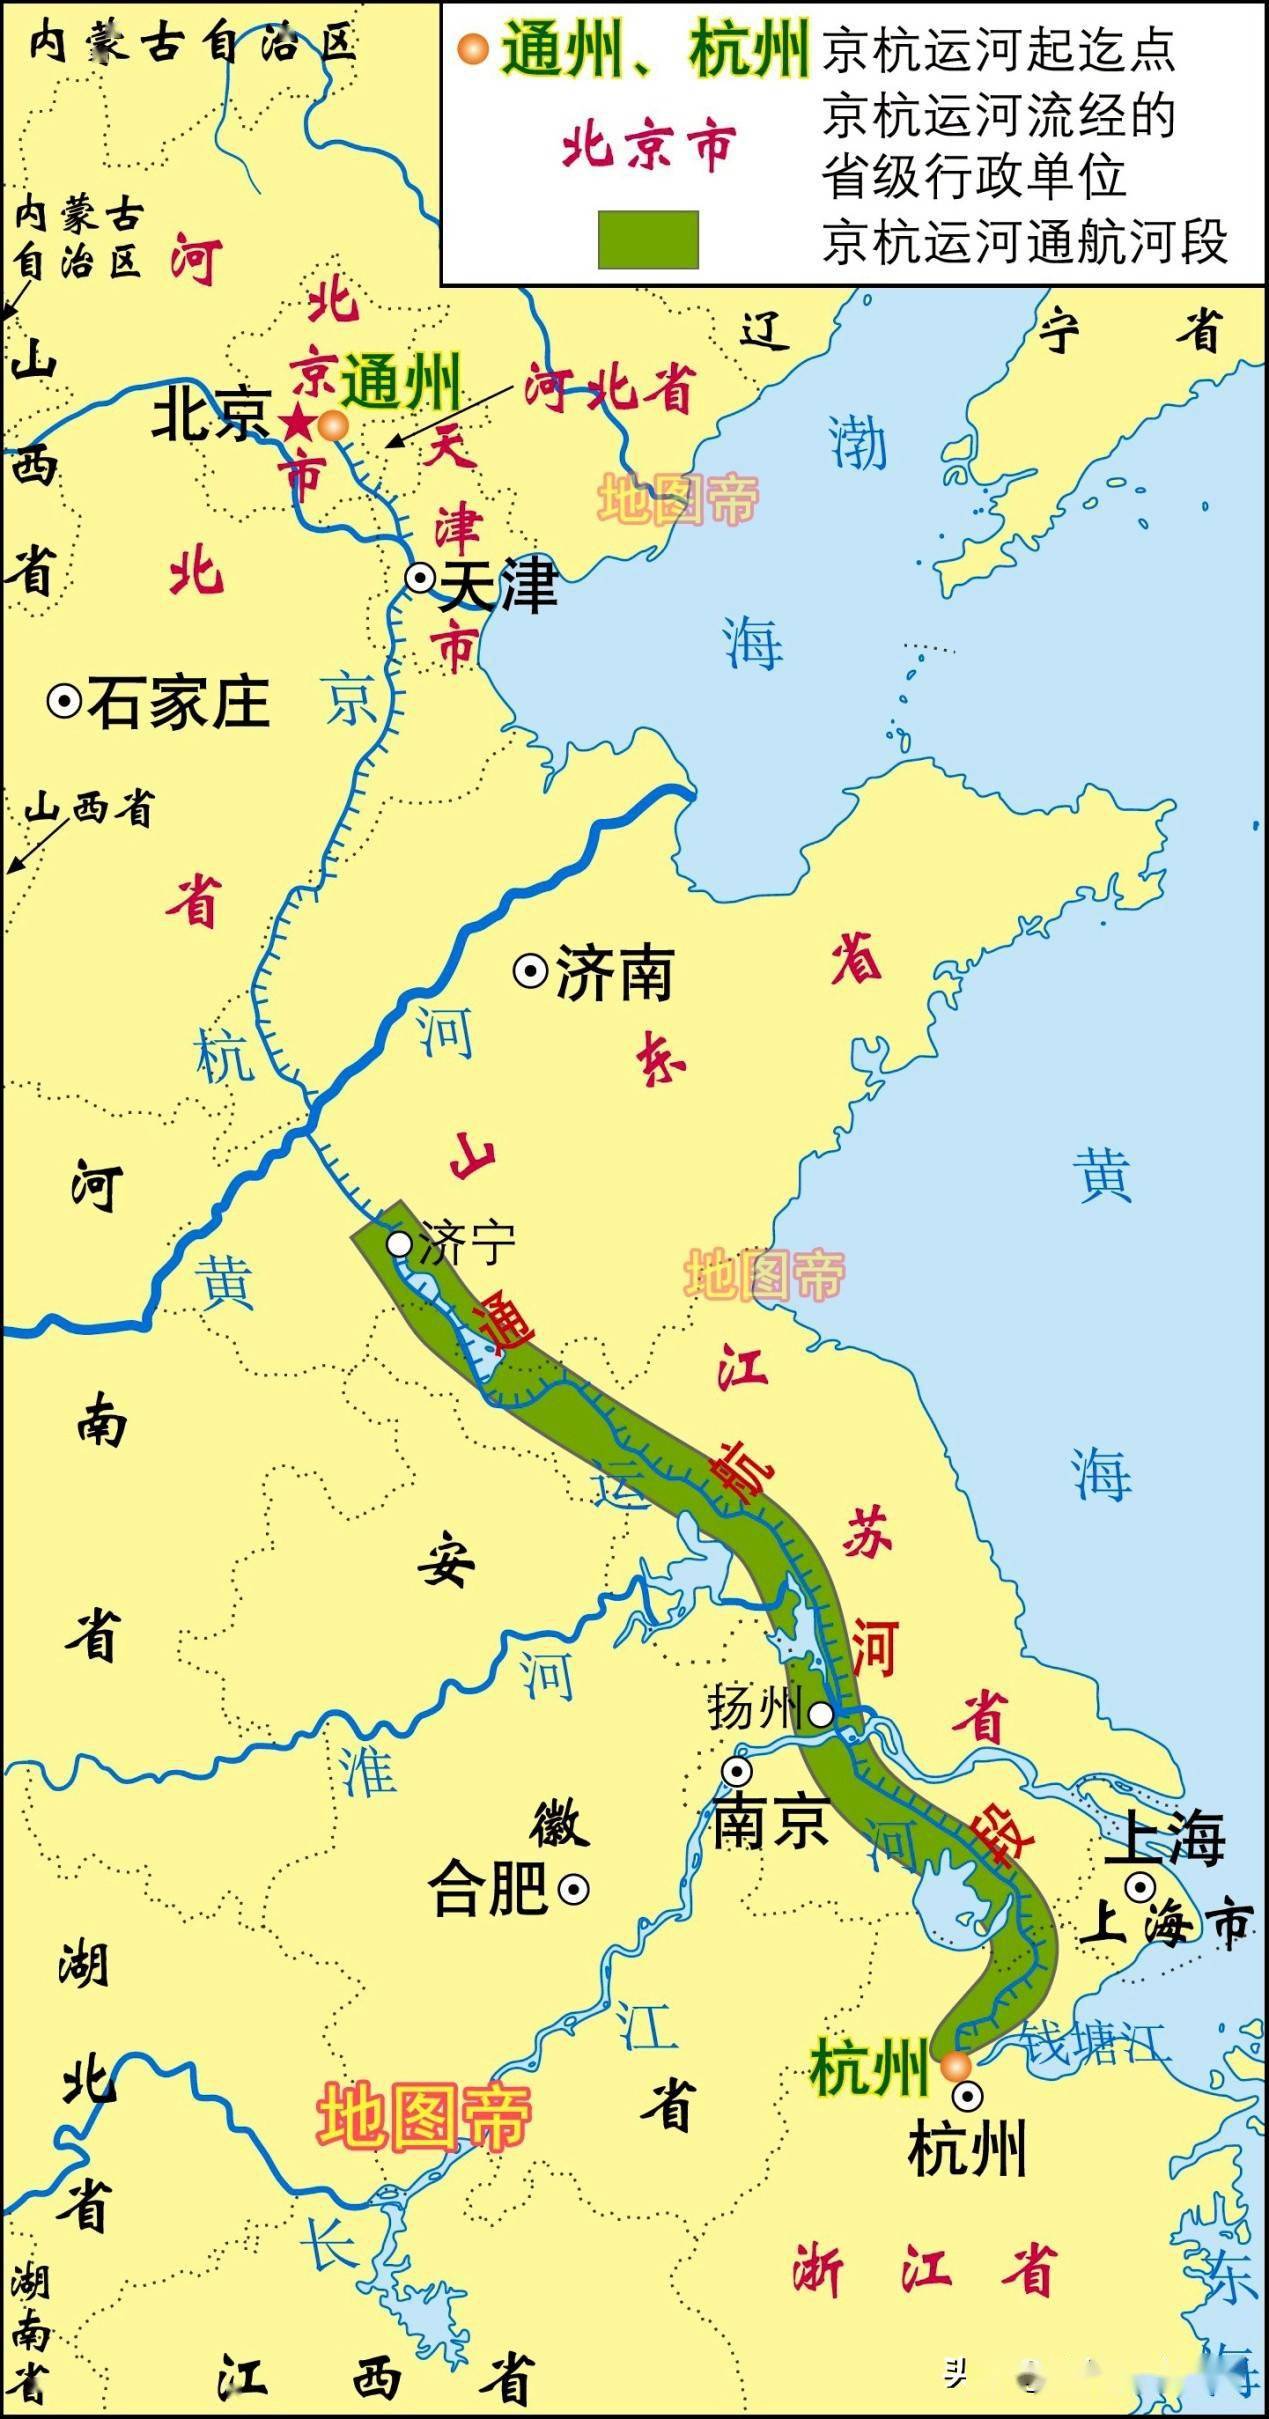 京杭大运河上的重镇,淮安在历史上有多重要?